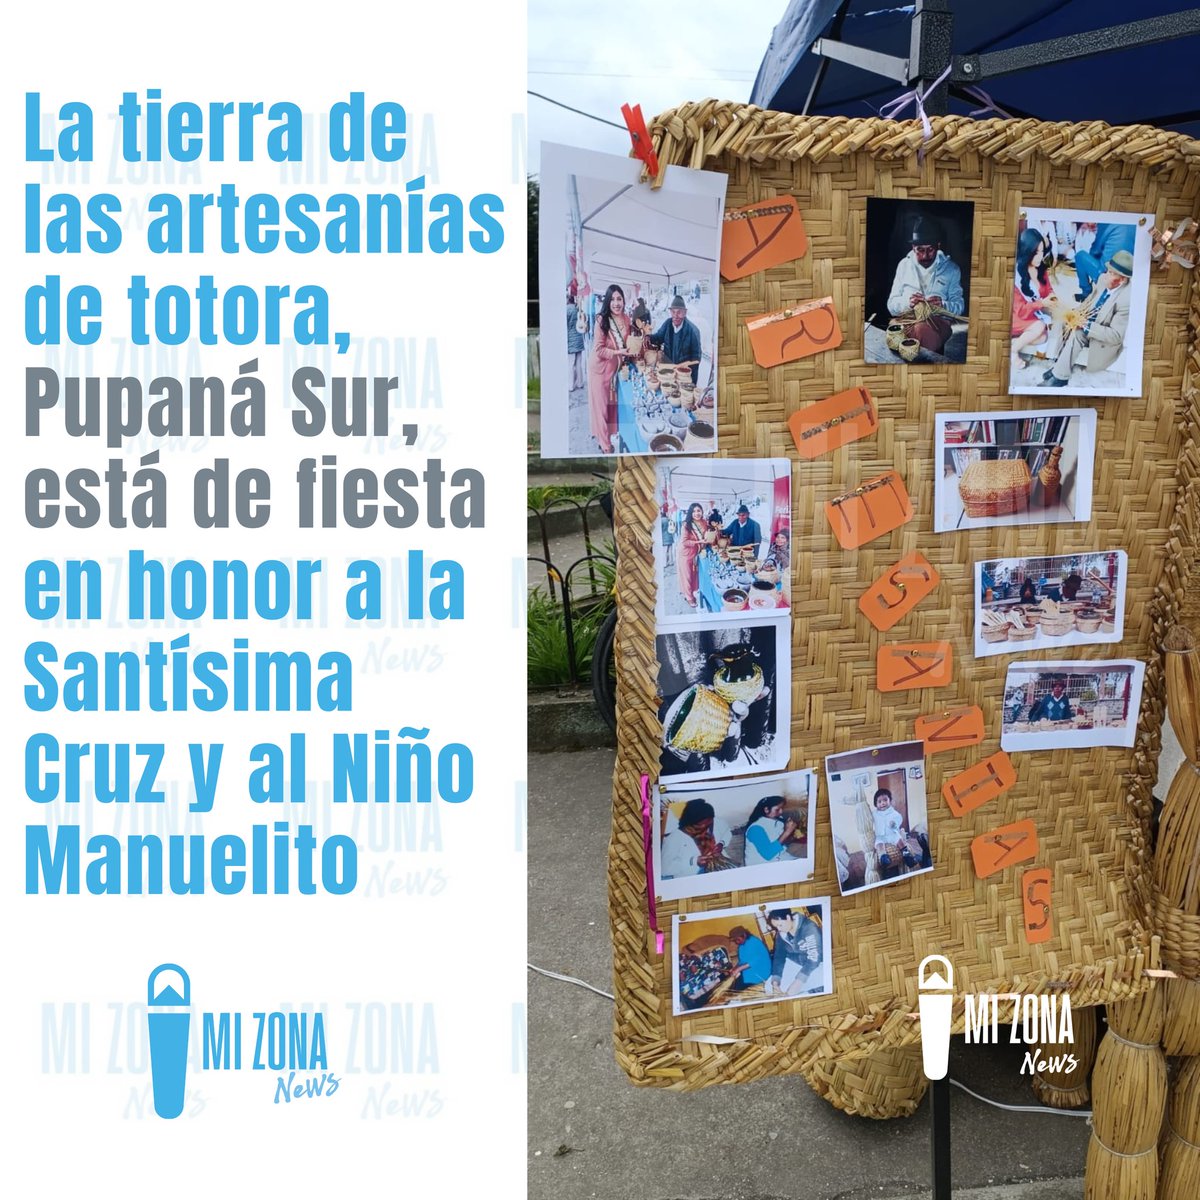 El barrio #PupanáSur de #Guaytacama celebra desde este viernes 3 hasta este domingo 5 de mayo sus fiestas patronales religiosas. #LatacungaRural #Latacunga 👇

facebook.com/share/p/QoWBok…